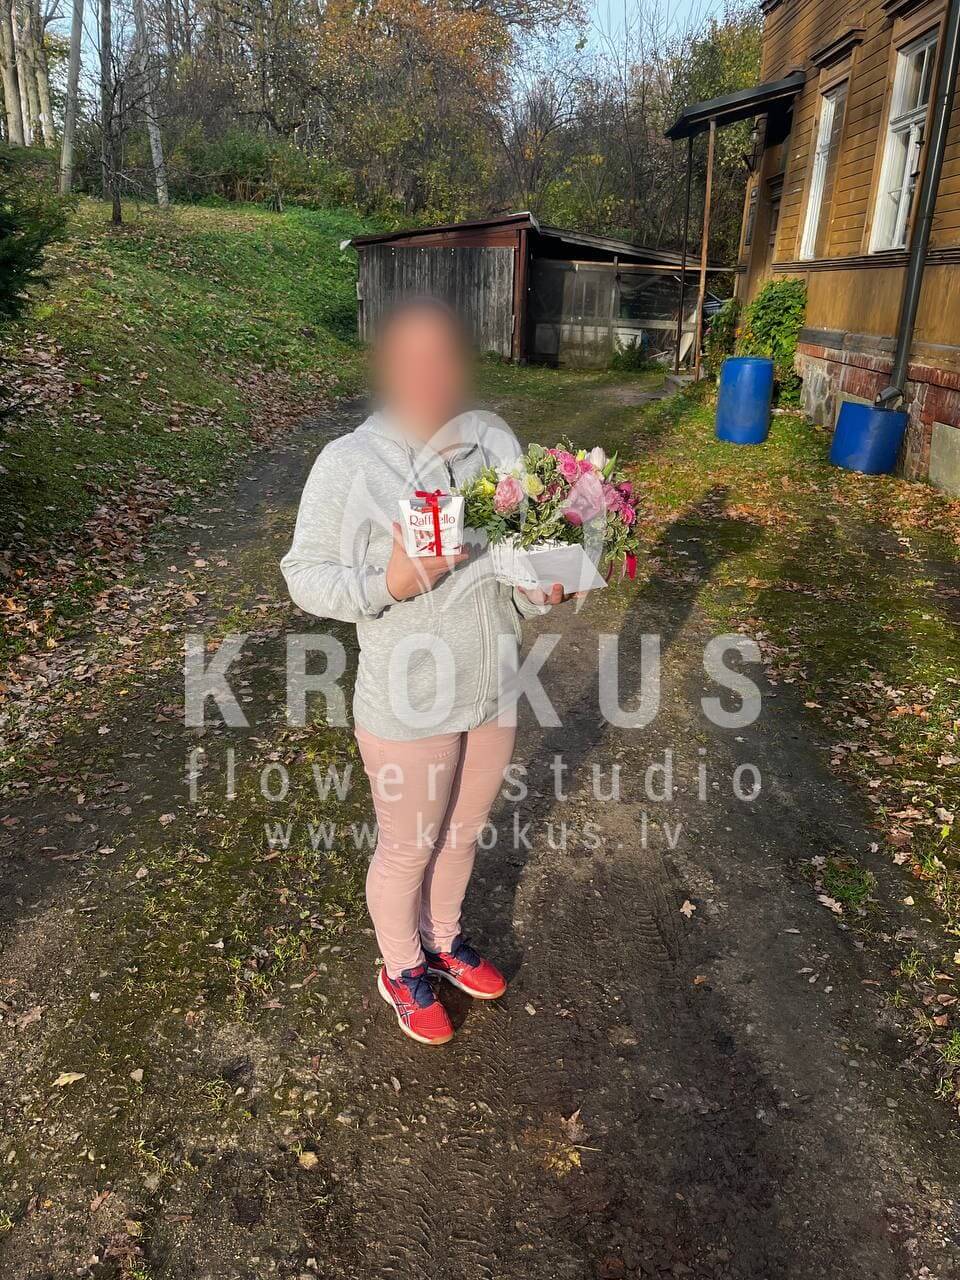 Ziedu piegāde Latvia Līgatne (krūmrozestulpesfrēzijaspistācijamatiolaorhidejaskaraliskās tulpeslizantes)